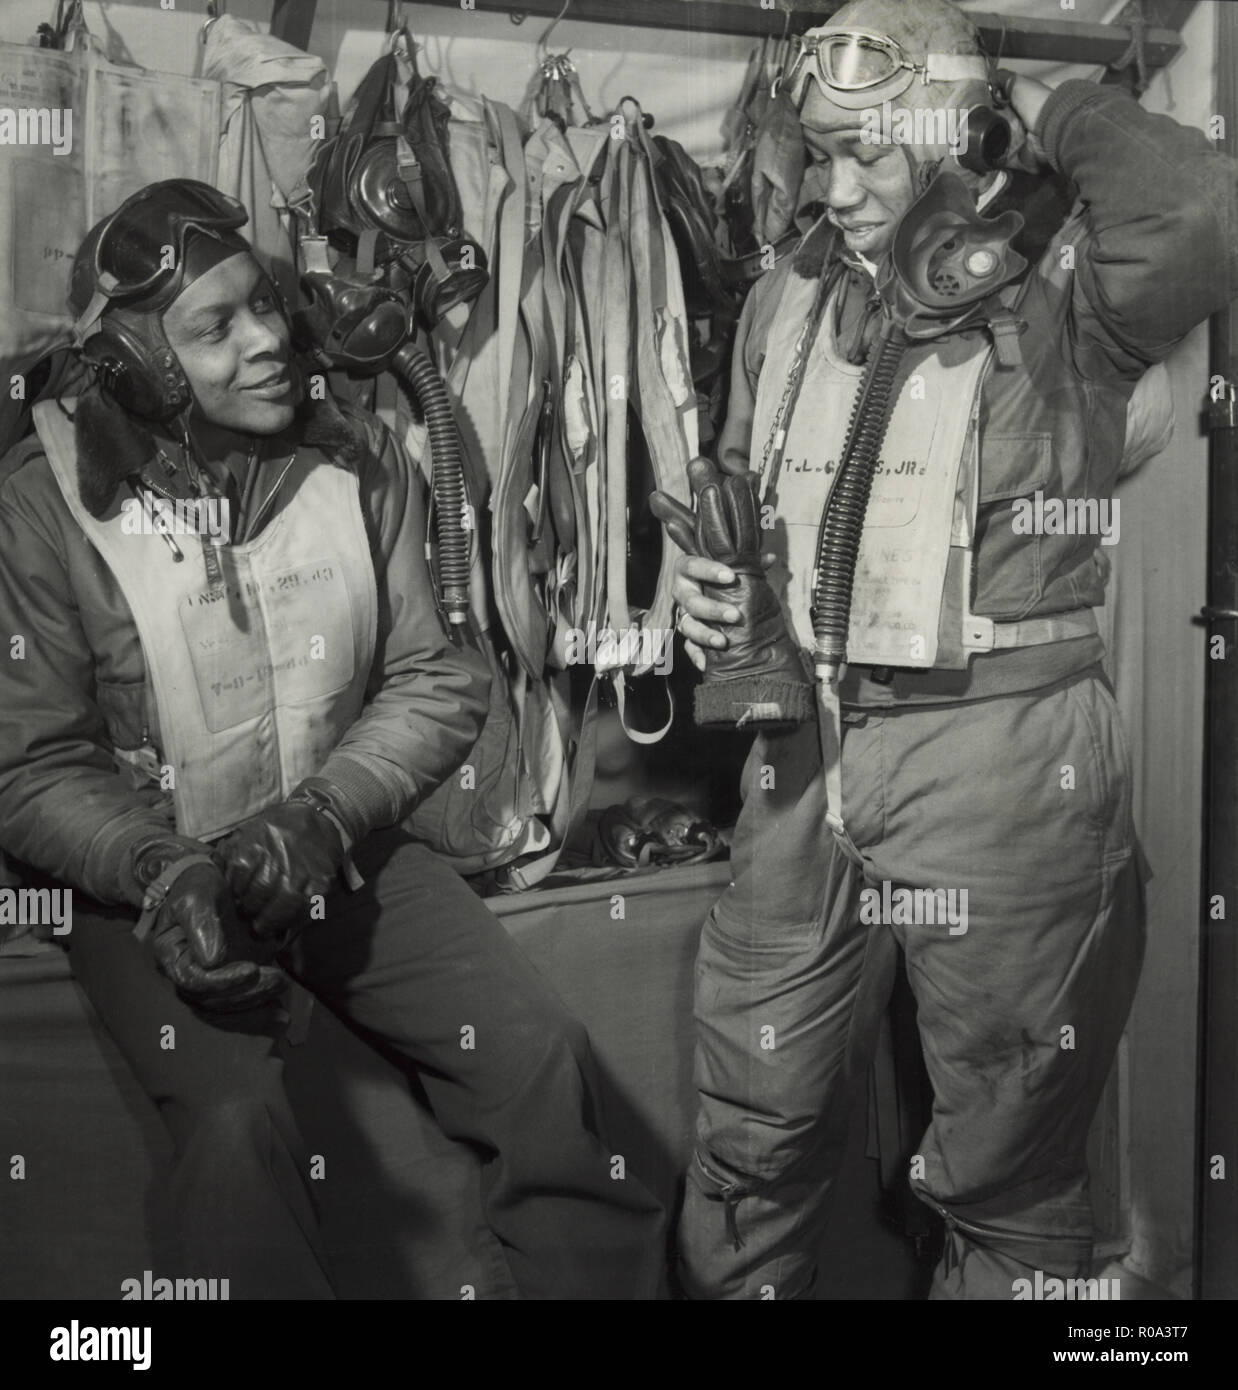 Deux membres du 332e Groupe de chasse, William A. Campbell, Tuskegee, AL, la classe 42-F ; Thurston L. Gaines, Jr., Freeport, NY, classe 44-G, Ramitelli, Italie, Toni Frissell, Mars 1945 Banque D'Images